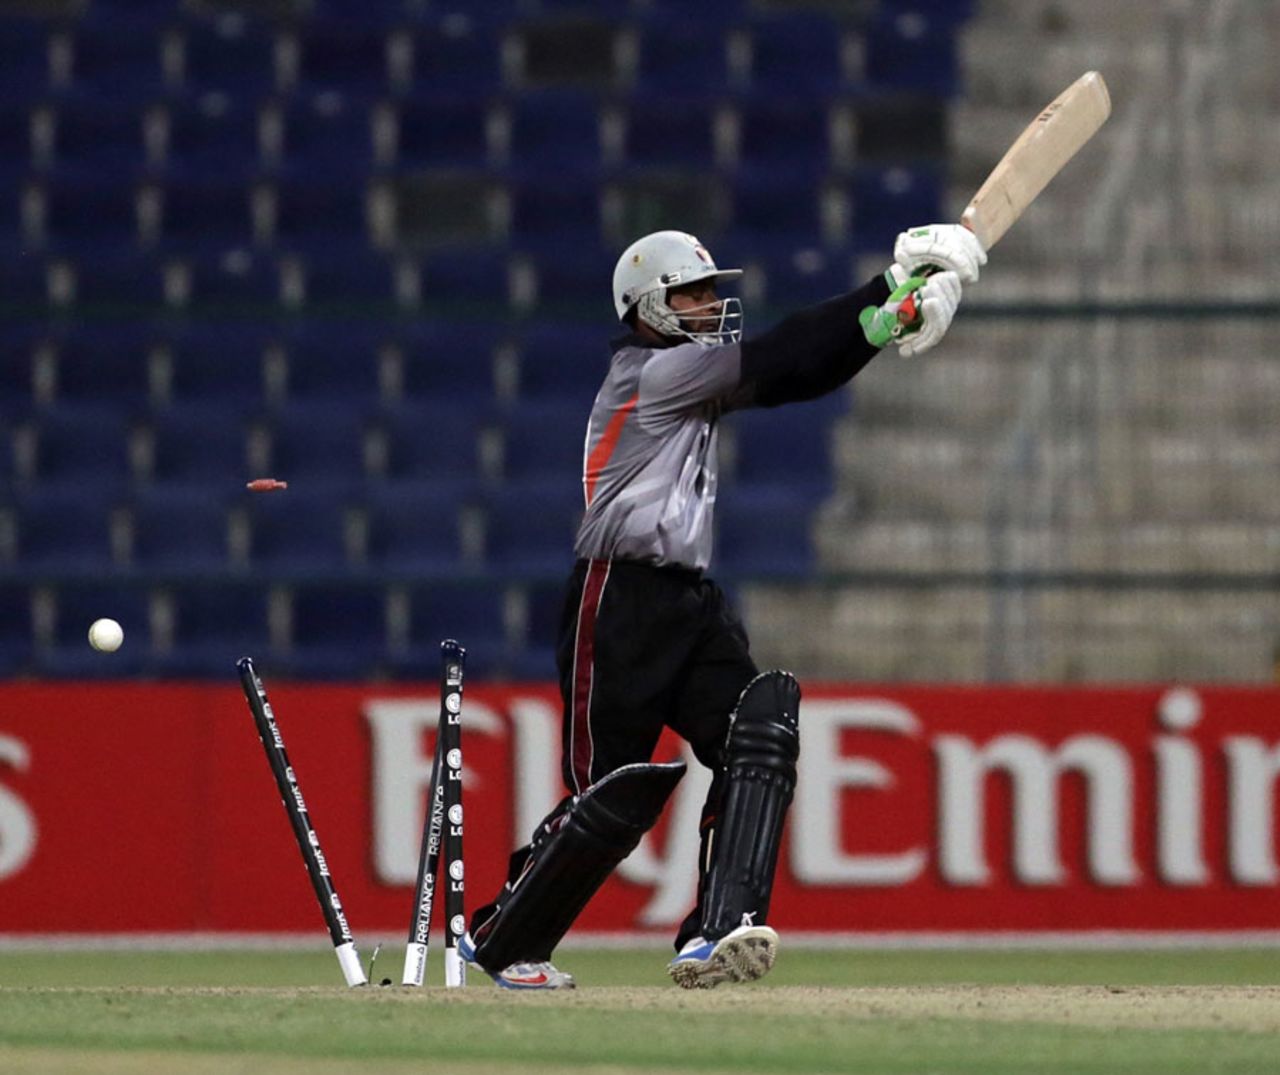 Nasir Aziz was bowled by Tim Murtagh, Ireland v UAE, ICC World T20 Qualifier, 2nd semi-final, Abu Dhabi, November 29, 2013